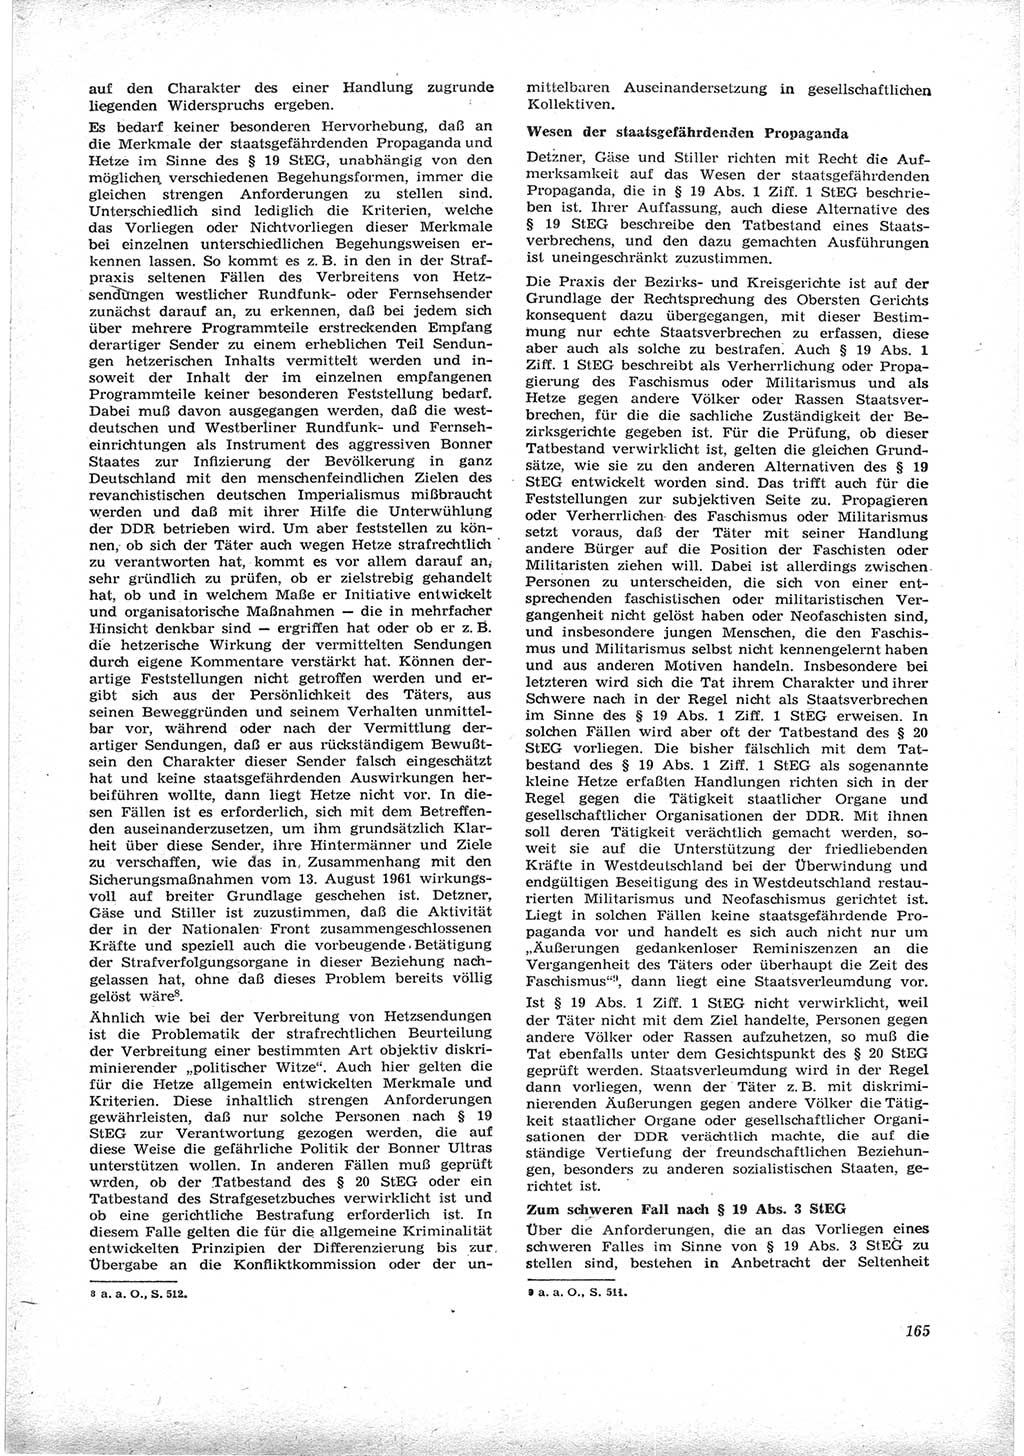 Neue Justiz (NJ), Zeitschrift für Recht und Rechtswissenschaft [Deutsche Demokratische Republik (DDR)], 17. Jahrgang 1963, Seite 165 (NJ DDR 1963, S. 165)